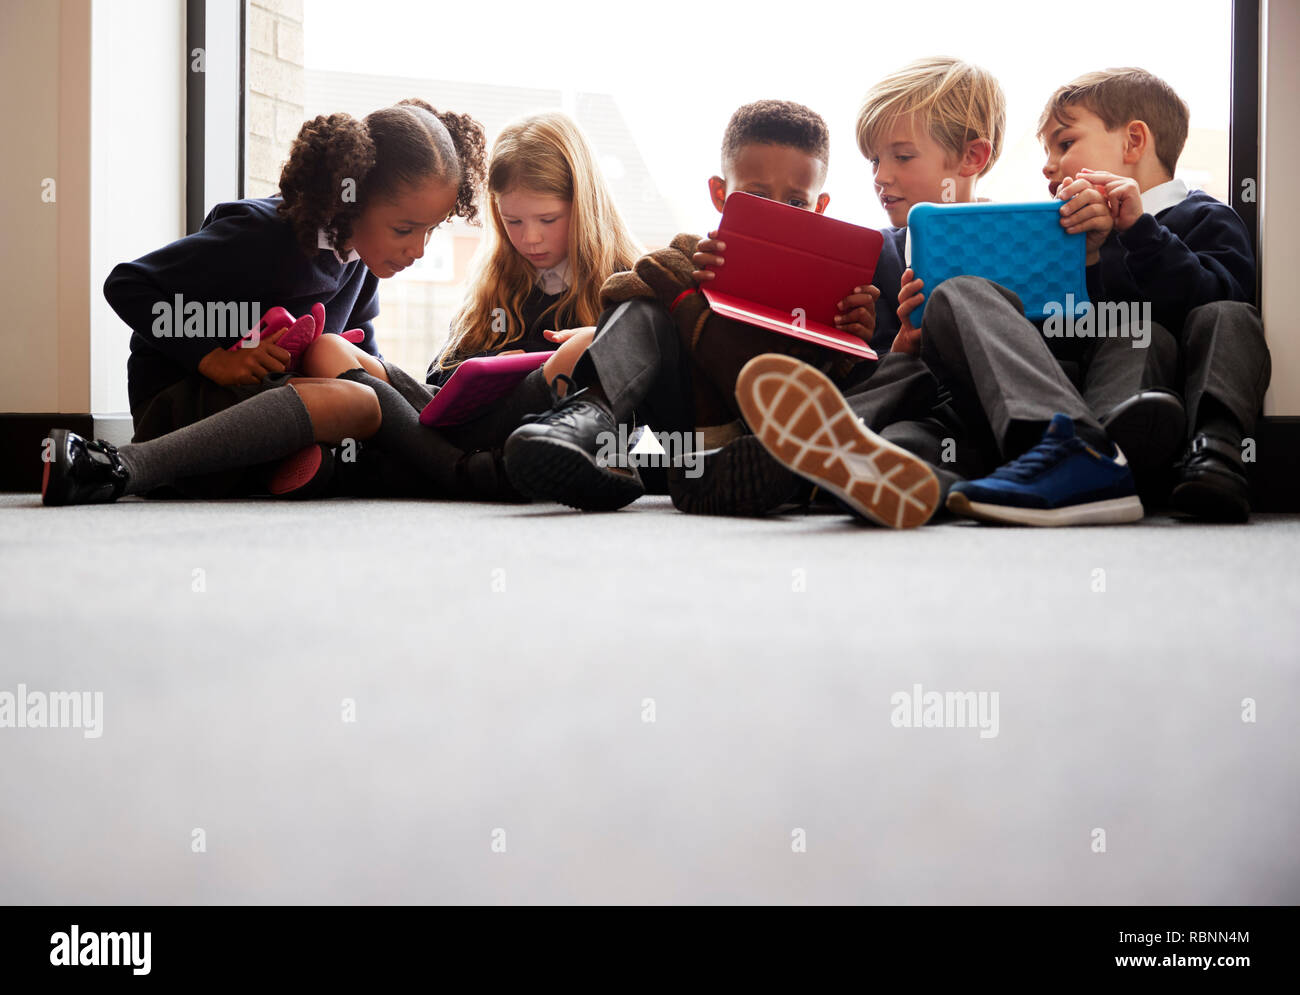 Basso angolo vista della scuola primaria amici seduti insieme davanti a una finestra in una scuola corridoio guardando i computer tablet insieme Foto Stock